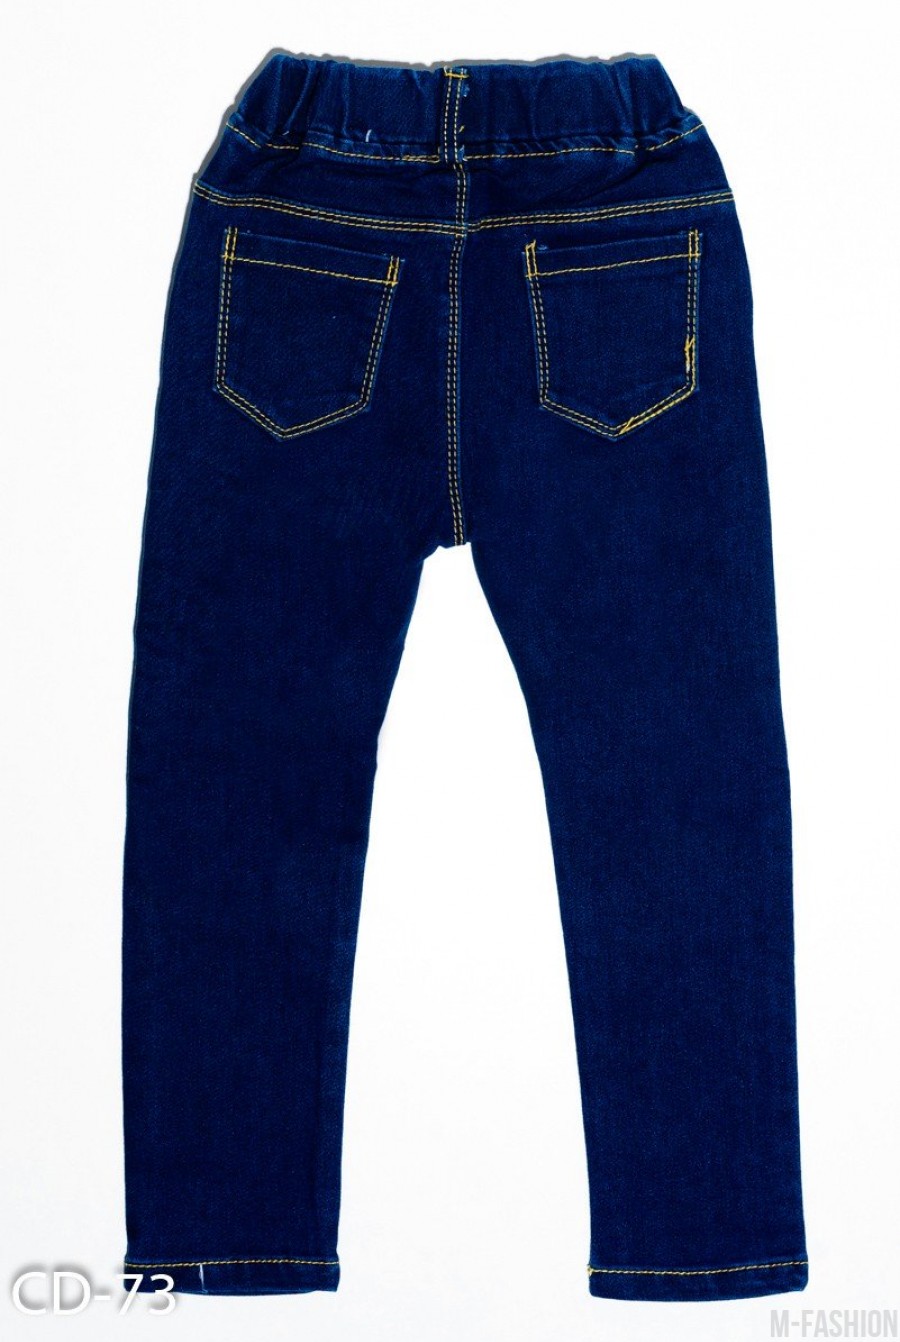 Темно-синие зауженные джинсы на резинке с рваной перфорацией на коленях- Фото 2